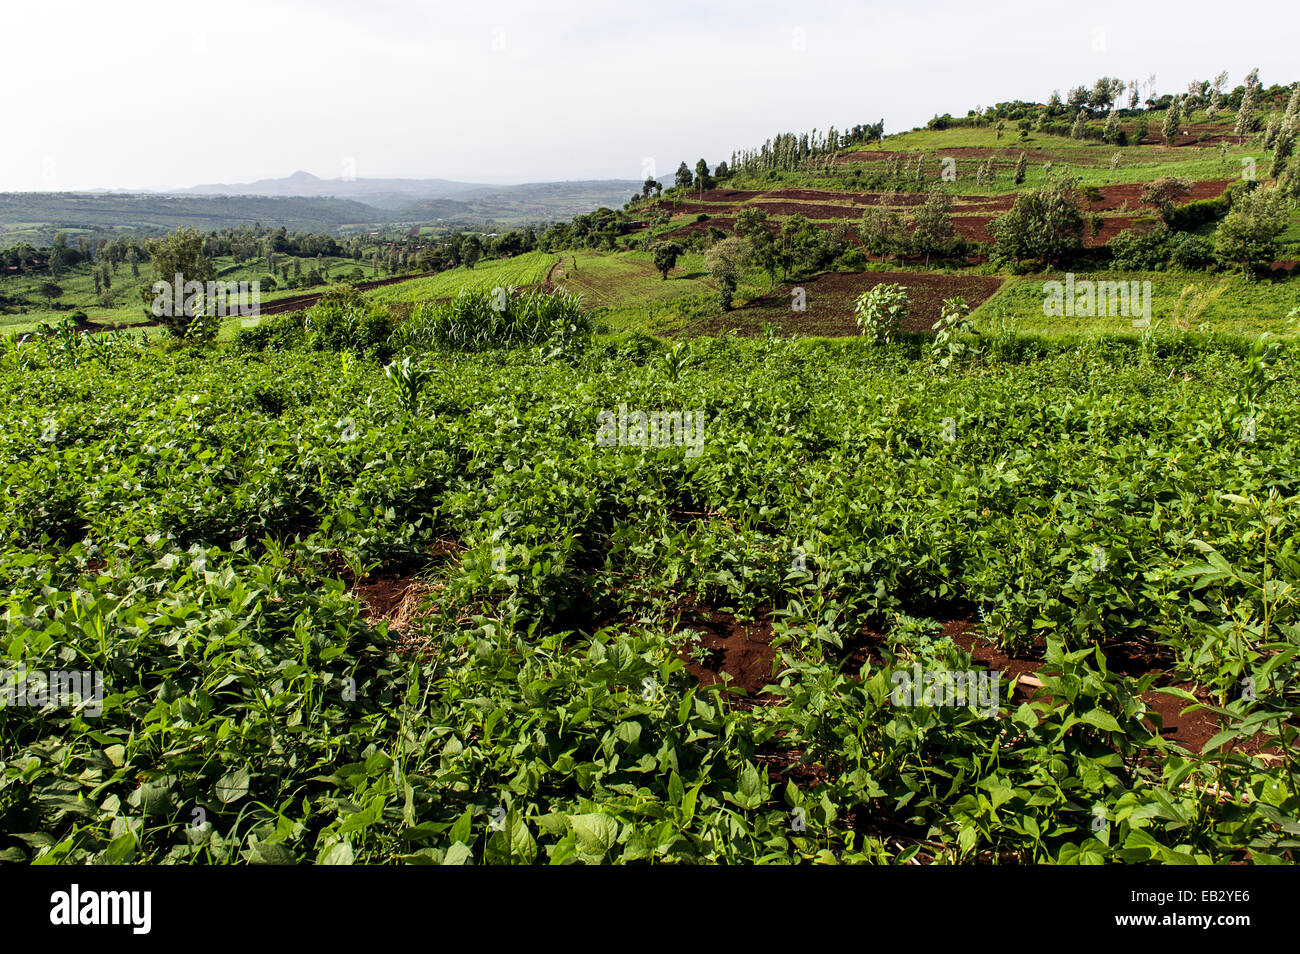 Lush, green farm les cultures qui poussent en rangées dans de riches sols volcaniques sur une colline. Banque D'Images